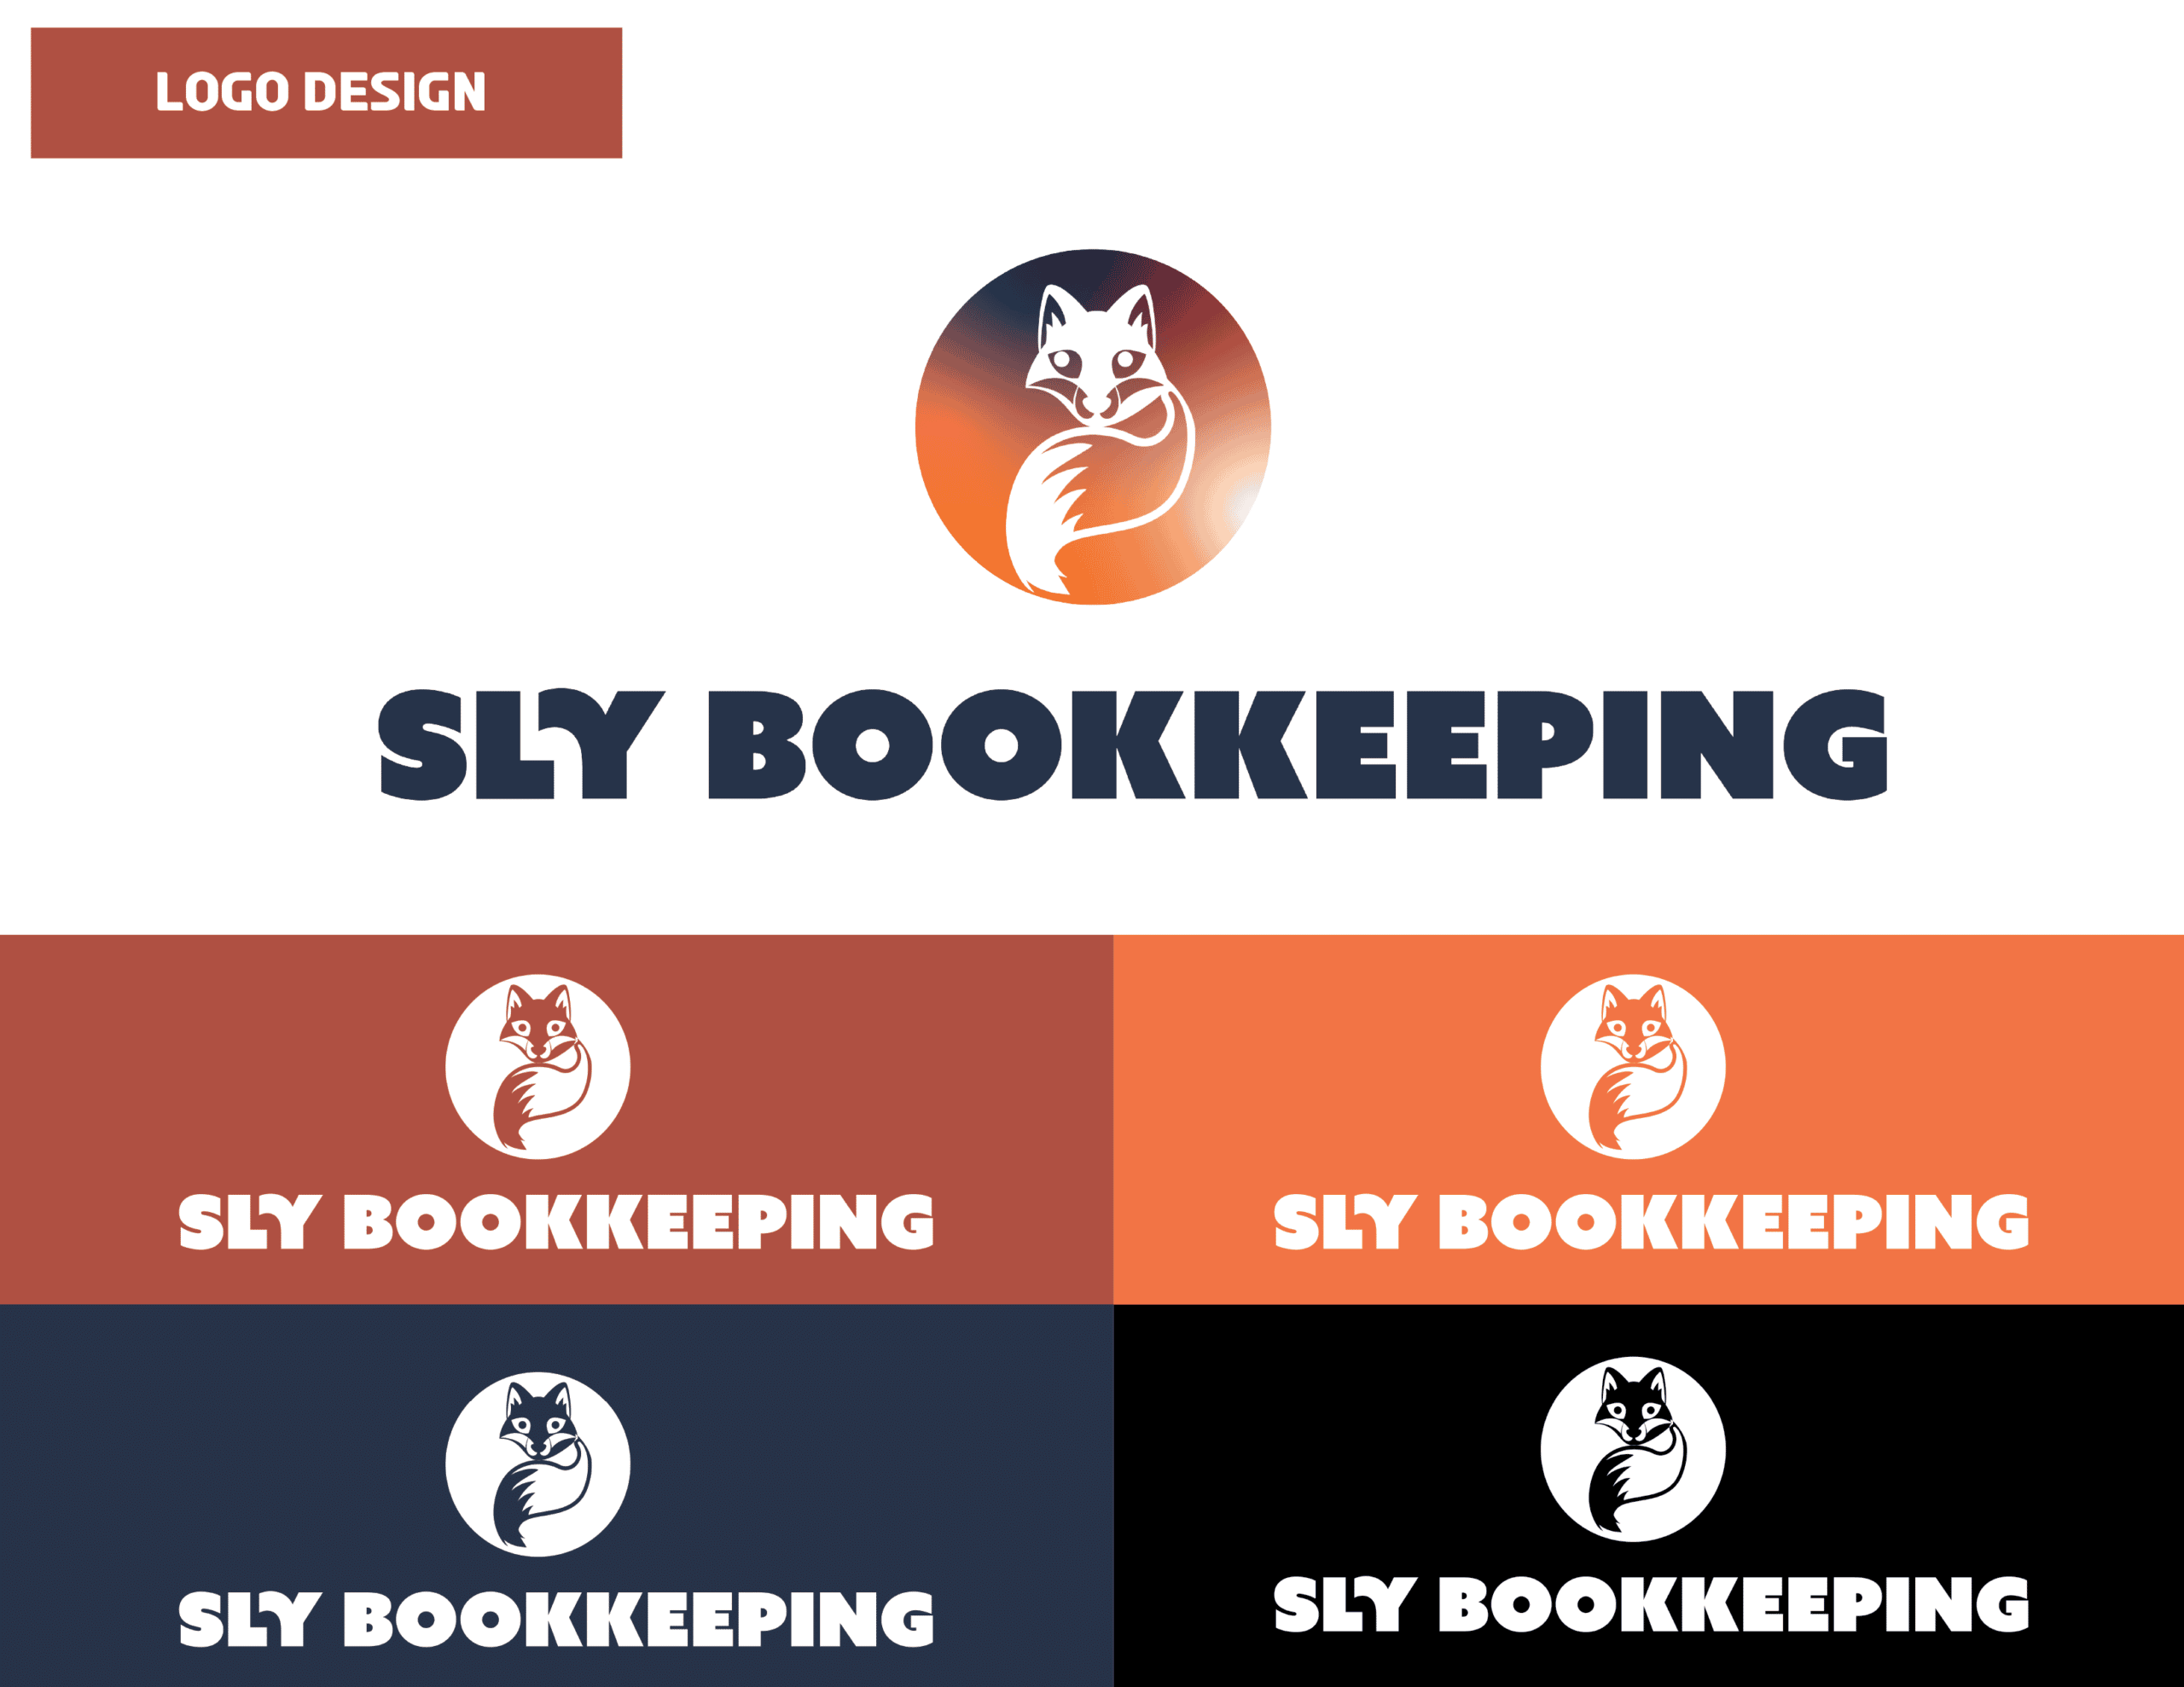 01_SlyBookkeeping_Logo Design